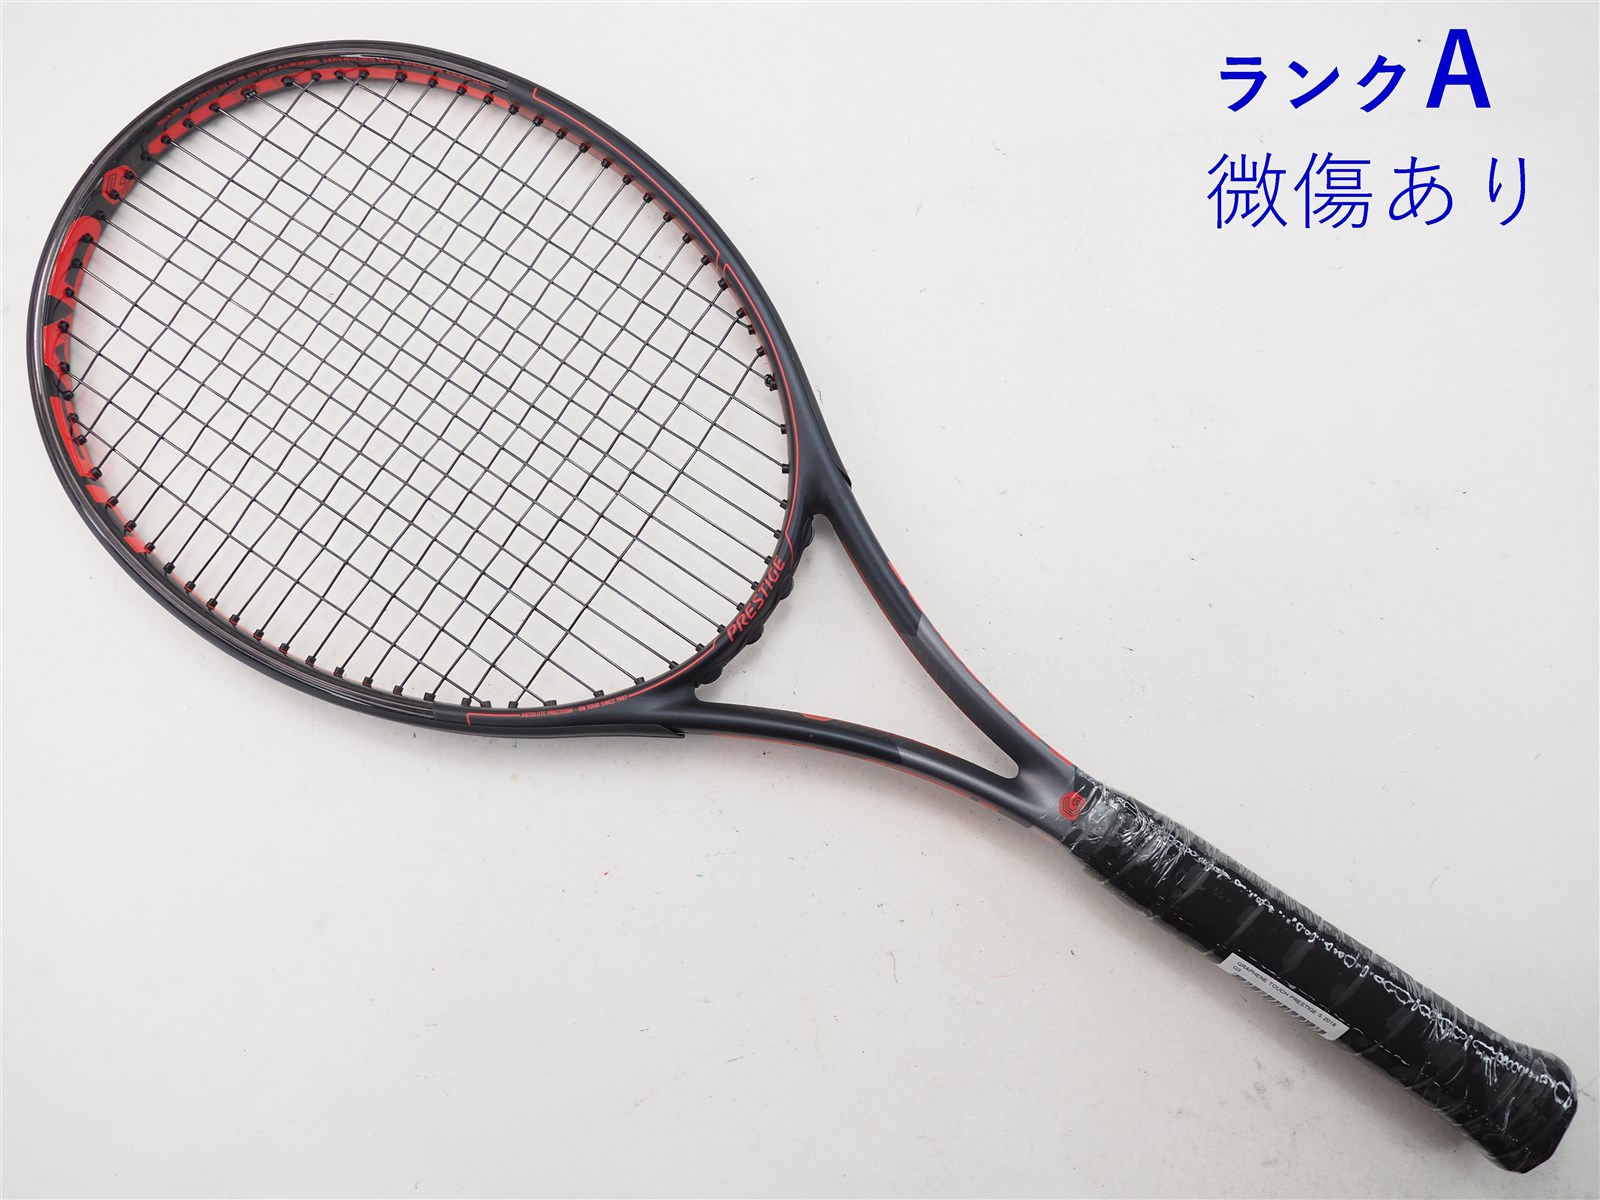 テニスラケット ヘッド グラフィン タッチ プレステージ MP 2018年モデル (G3)HEAD GRAPHENE TOUCH PRESTIGE MP 2018